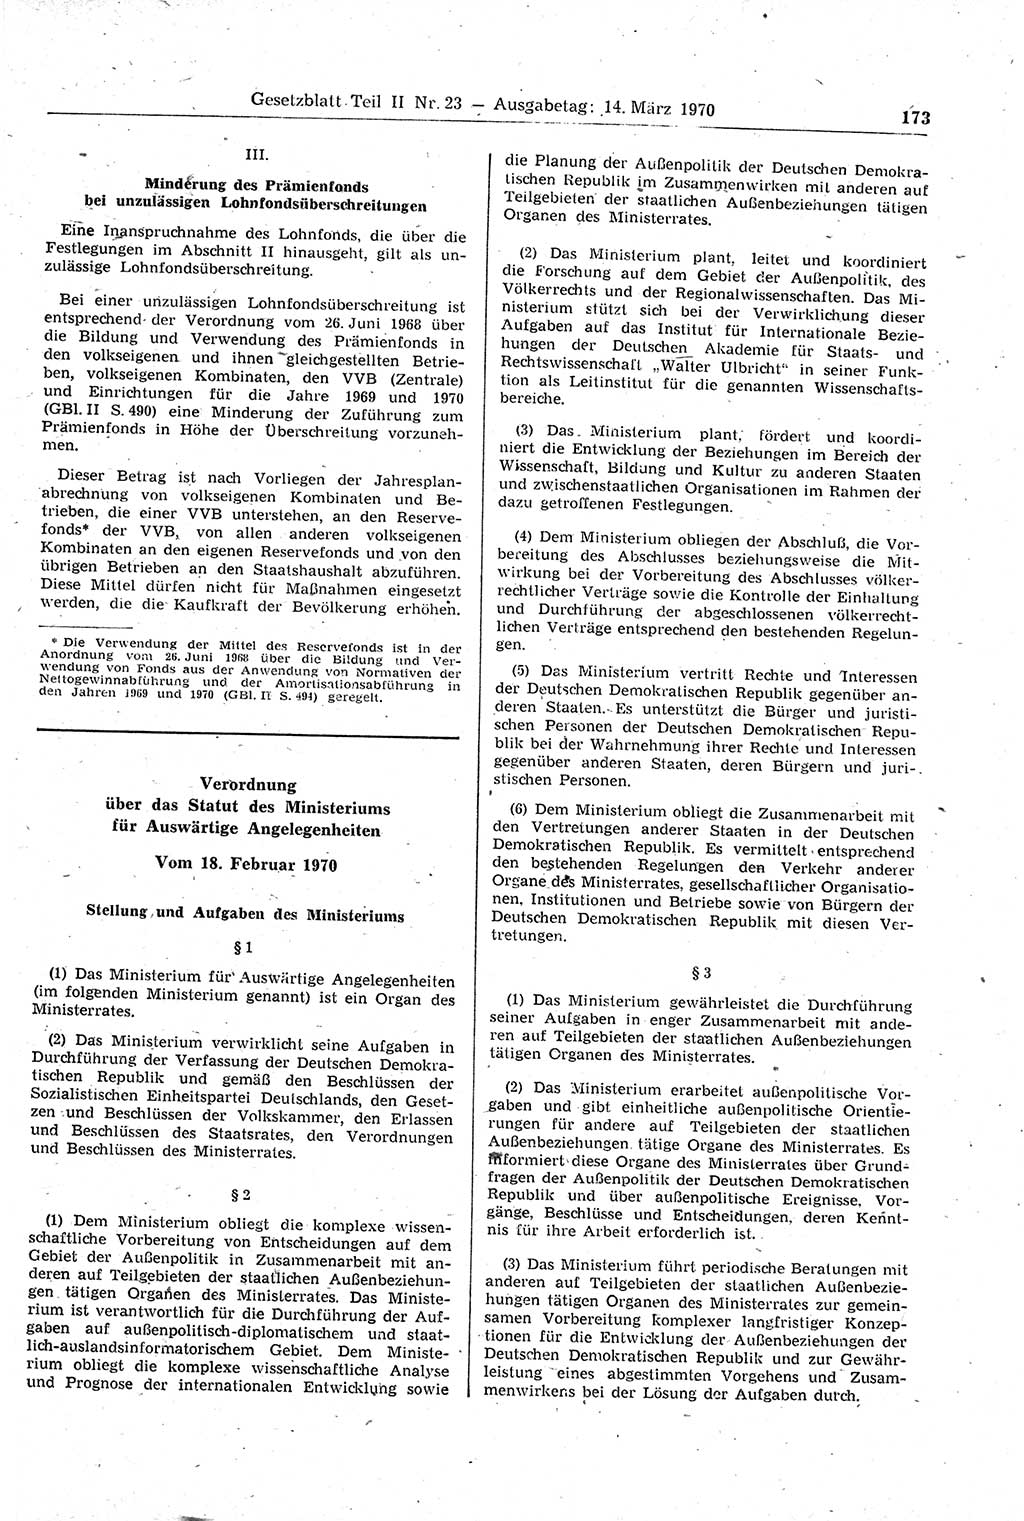 Gesetzblatt (GBl.) der Deutschen Demokratischen Republik (DDR) Teil ⅠⅠ 1970, Seite 173 (GBl. DDR ⅠⅠ 1970, S. 173)